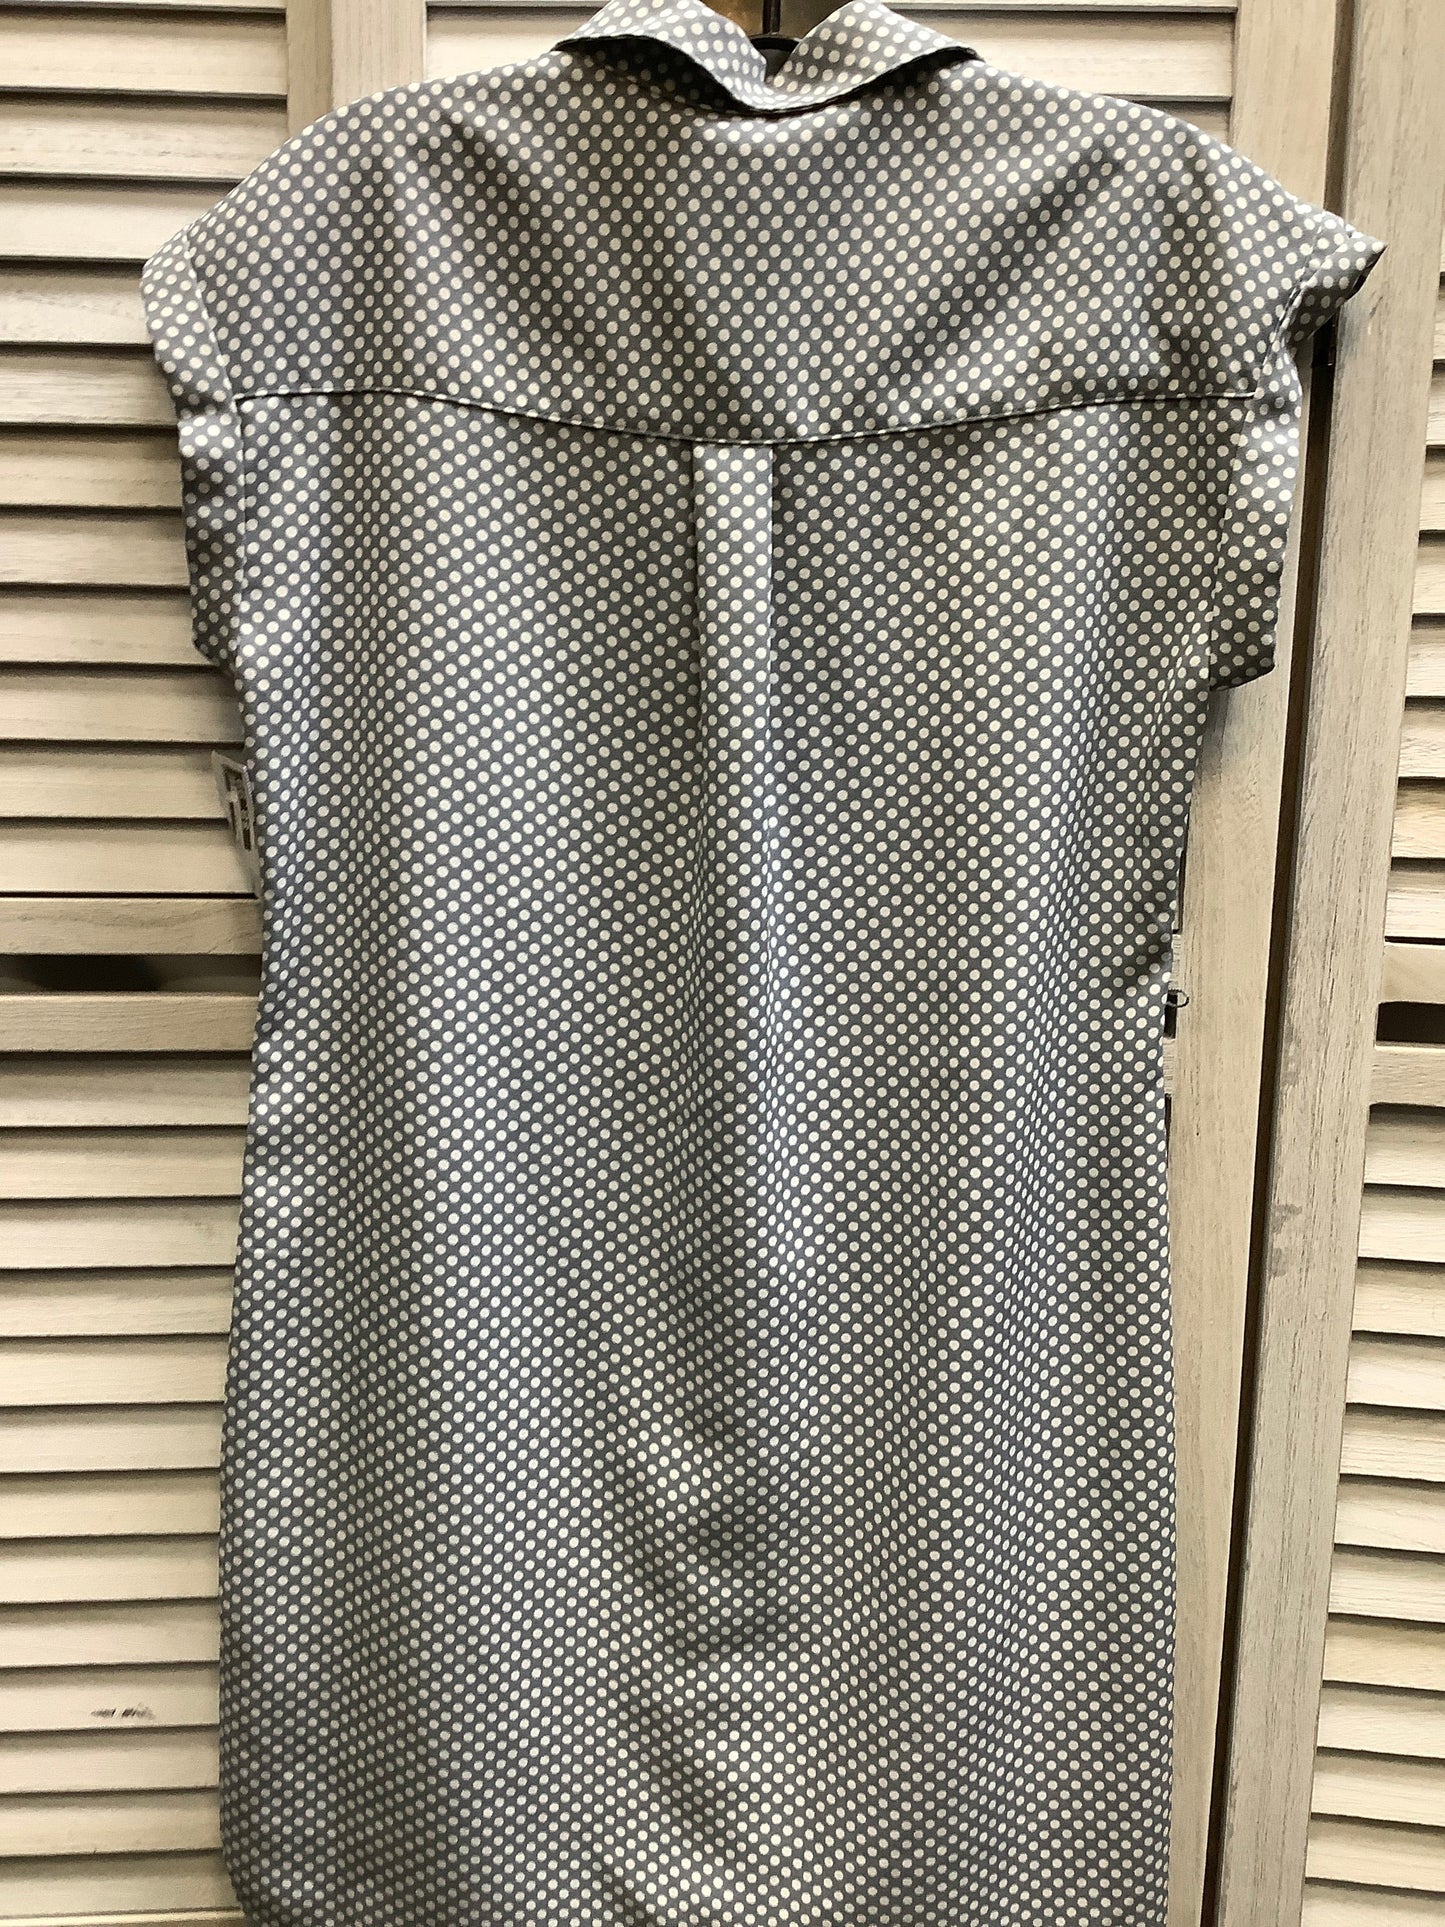 Polkadot Pattern Dress Casual Short Express, Size Xs